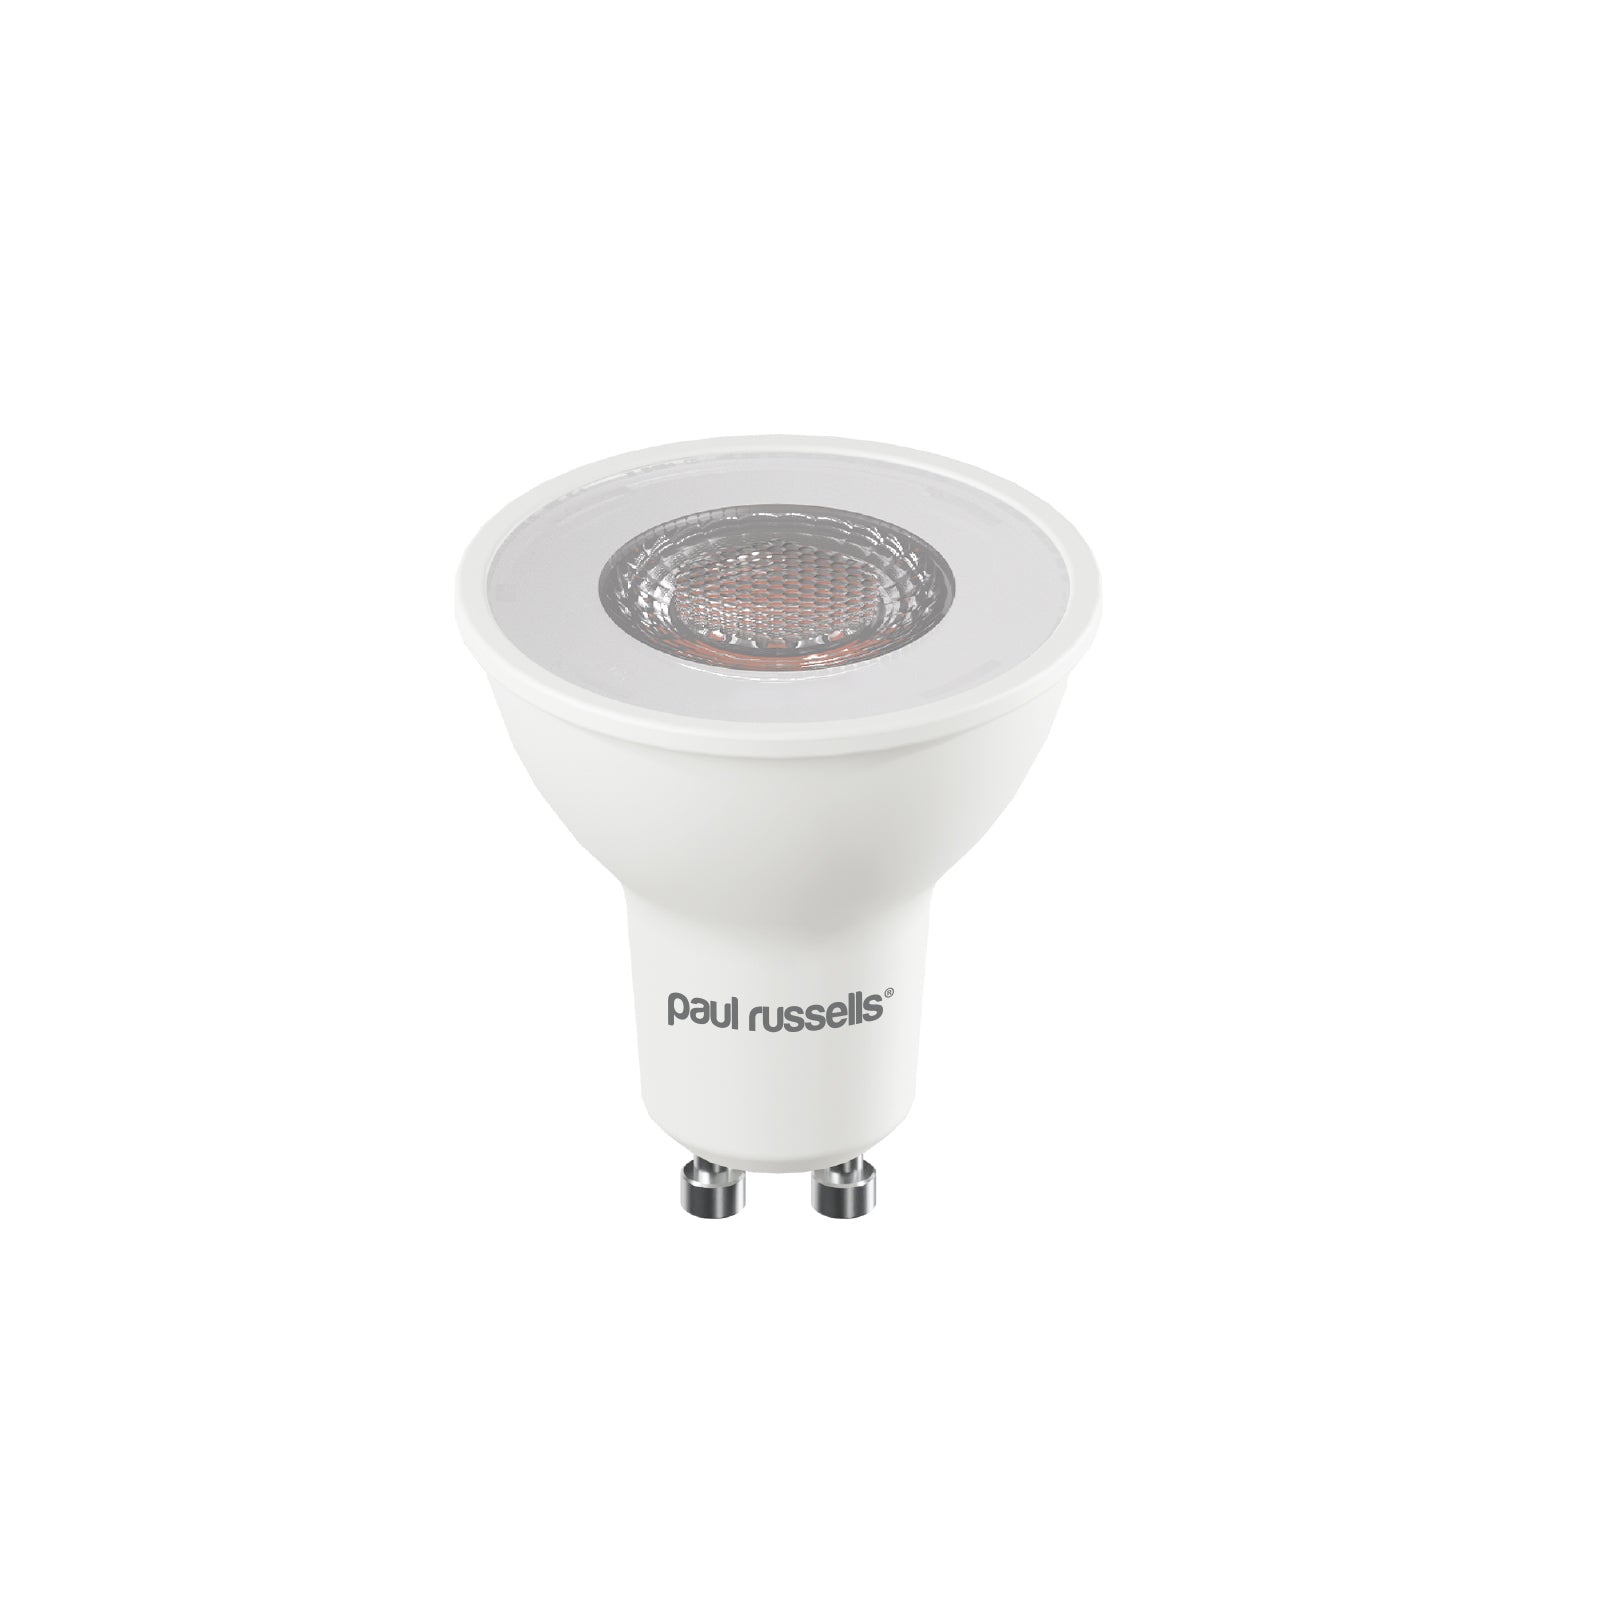 LED Spotlight 5W (60w), GU10, 450 Lumens, Warm White(2700K), 240V